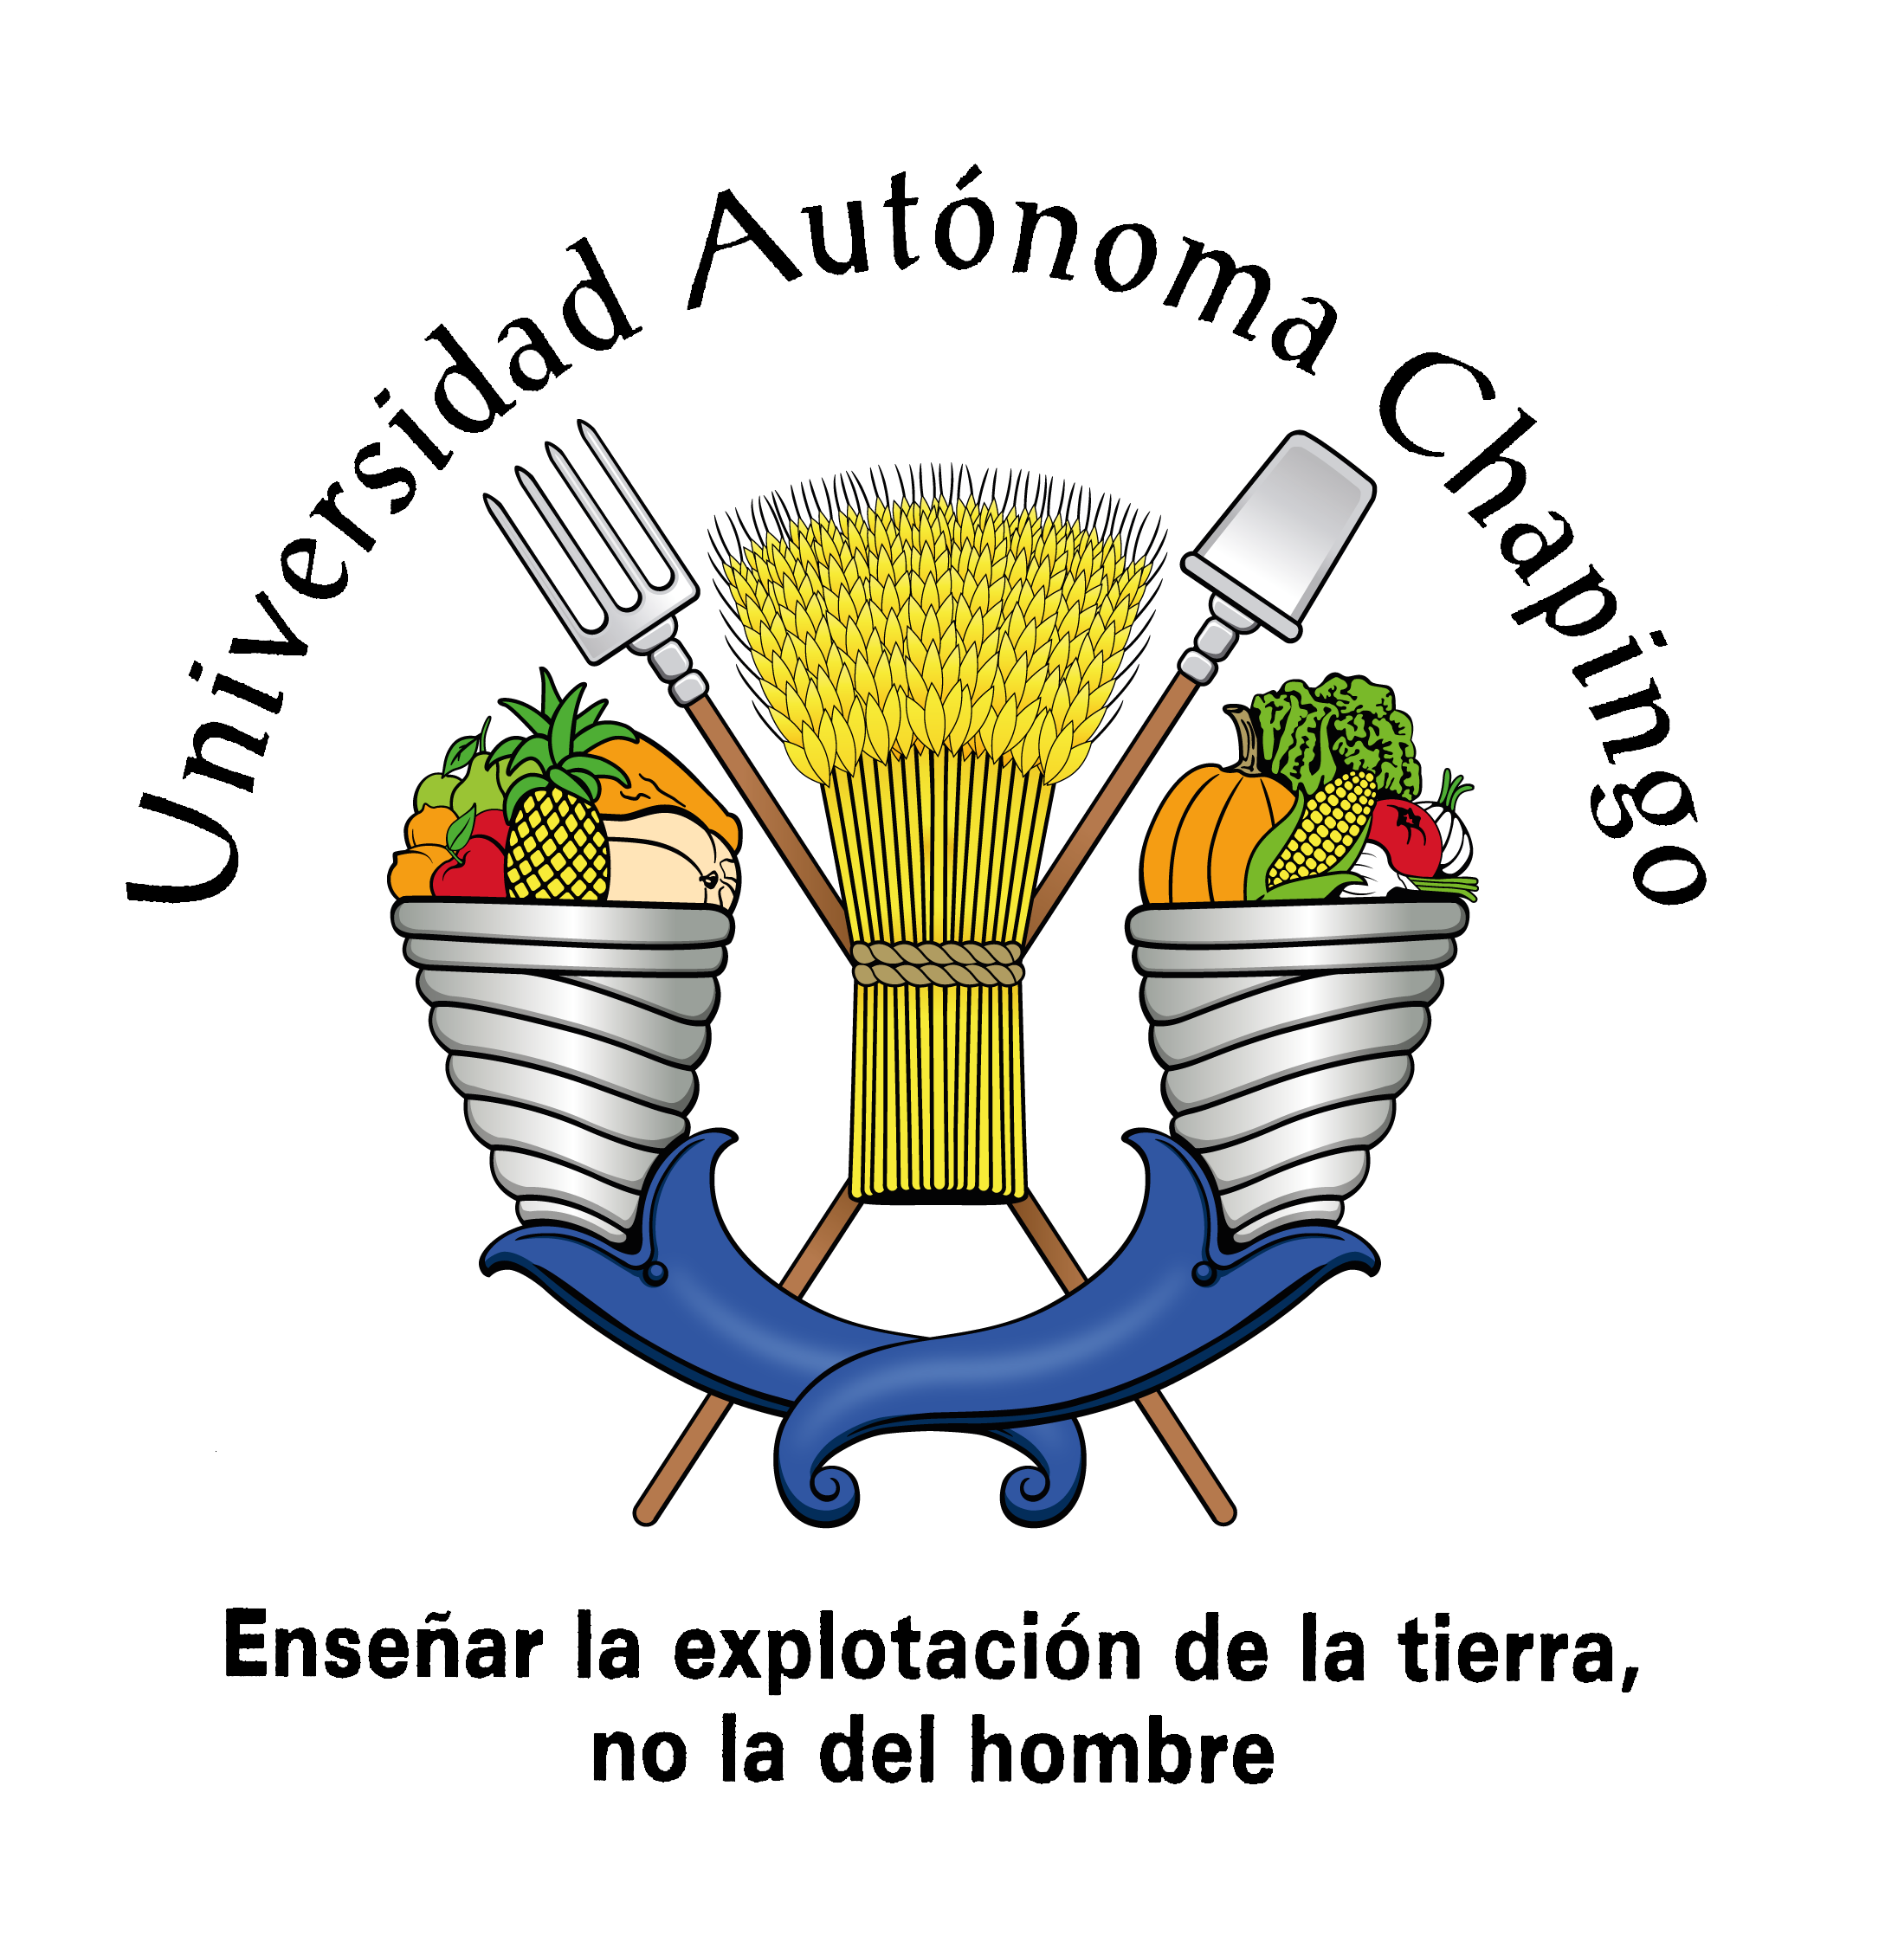 El escudo está formado por dos cuernos de la abundancia con productos agrícolas